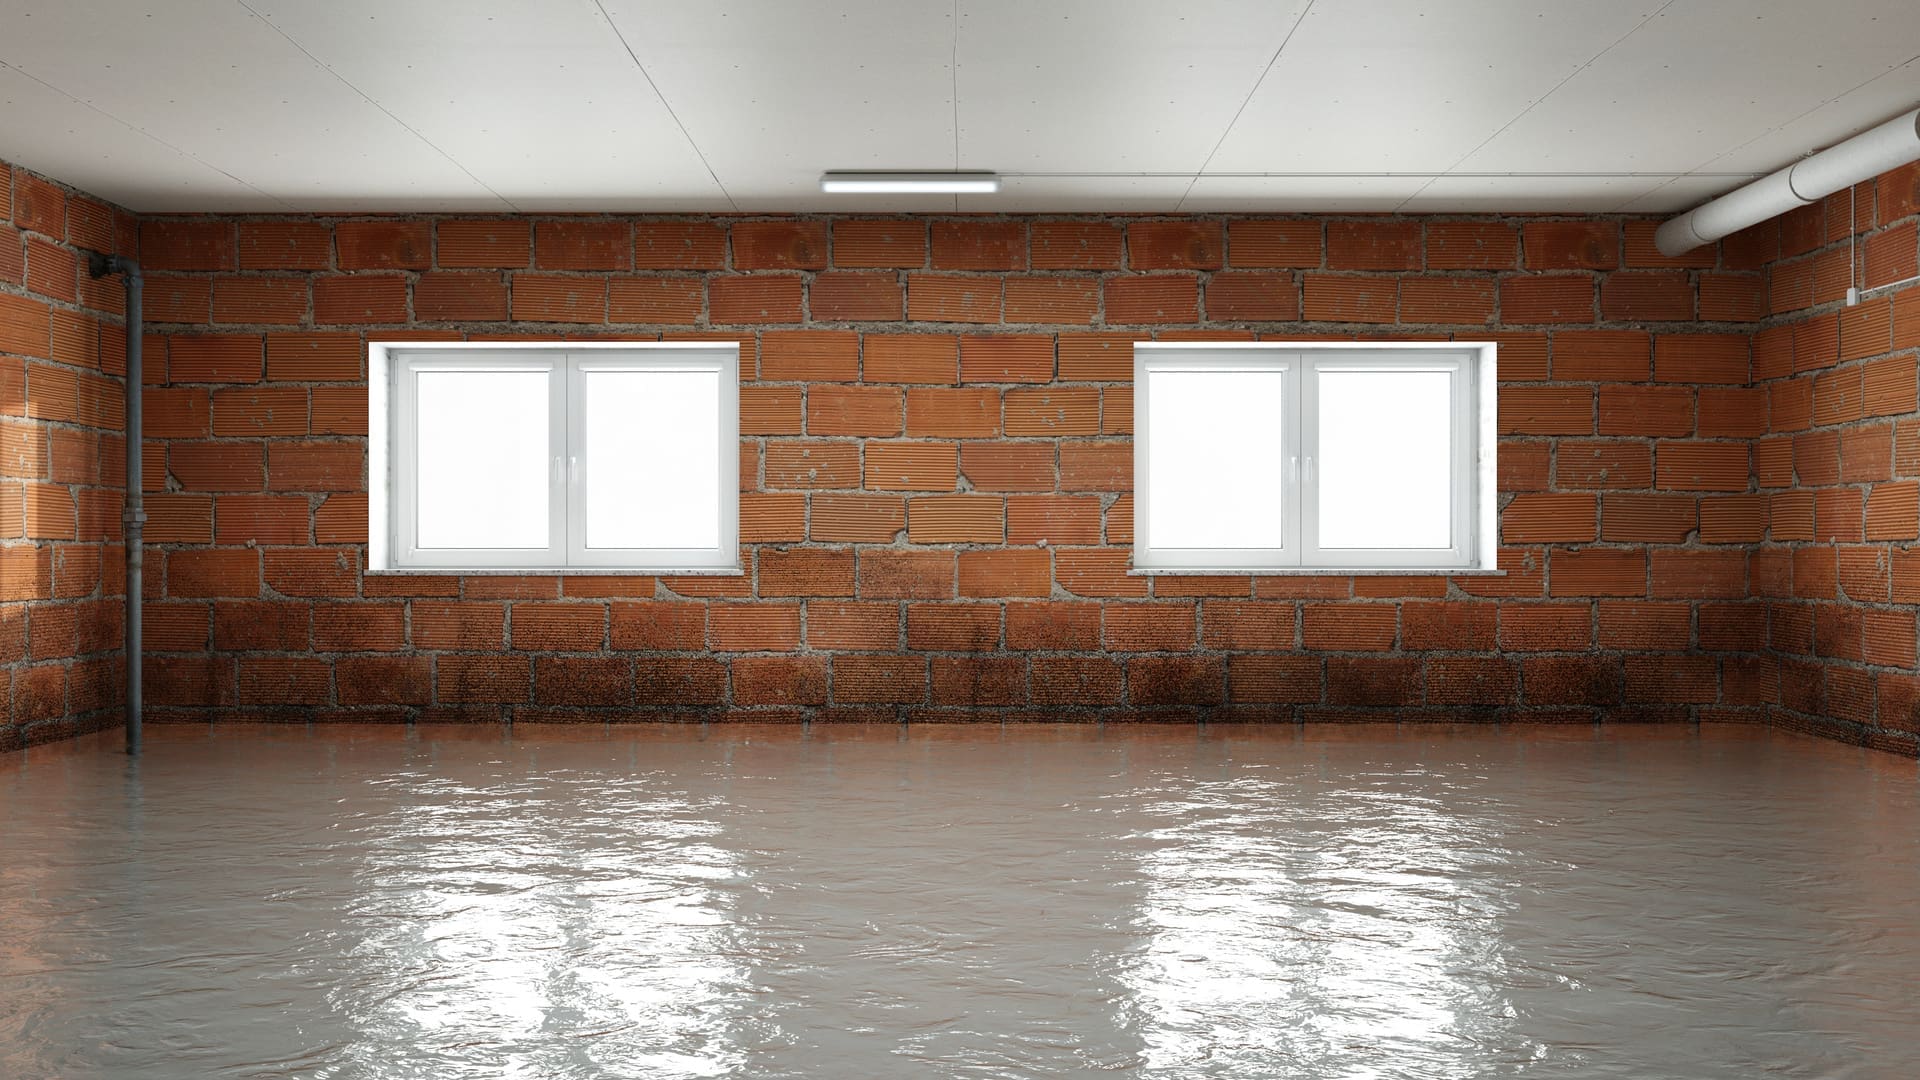 Wasser im Keller bei starkem Regen - Zahlt die Versicherung? (© Robert Kneschke / stock.adobe.com)